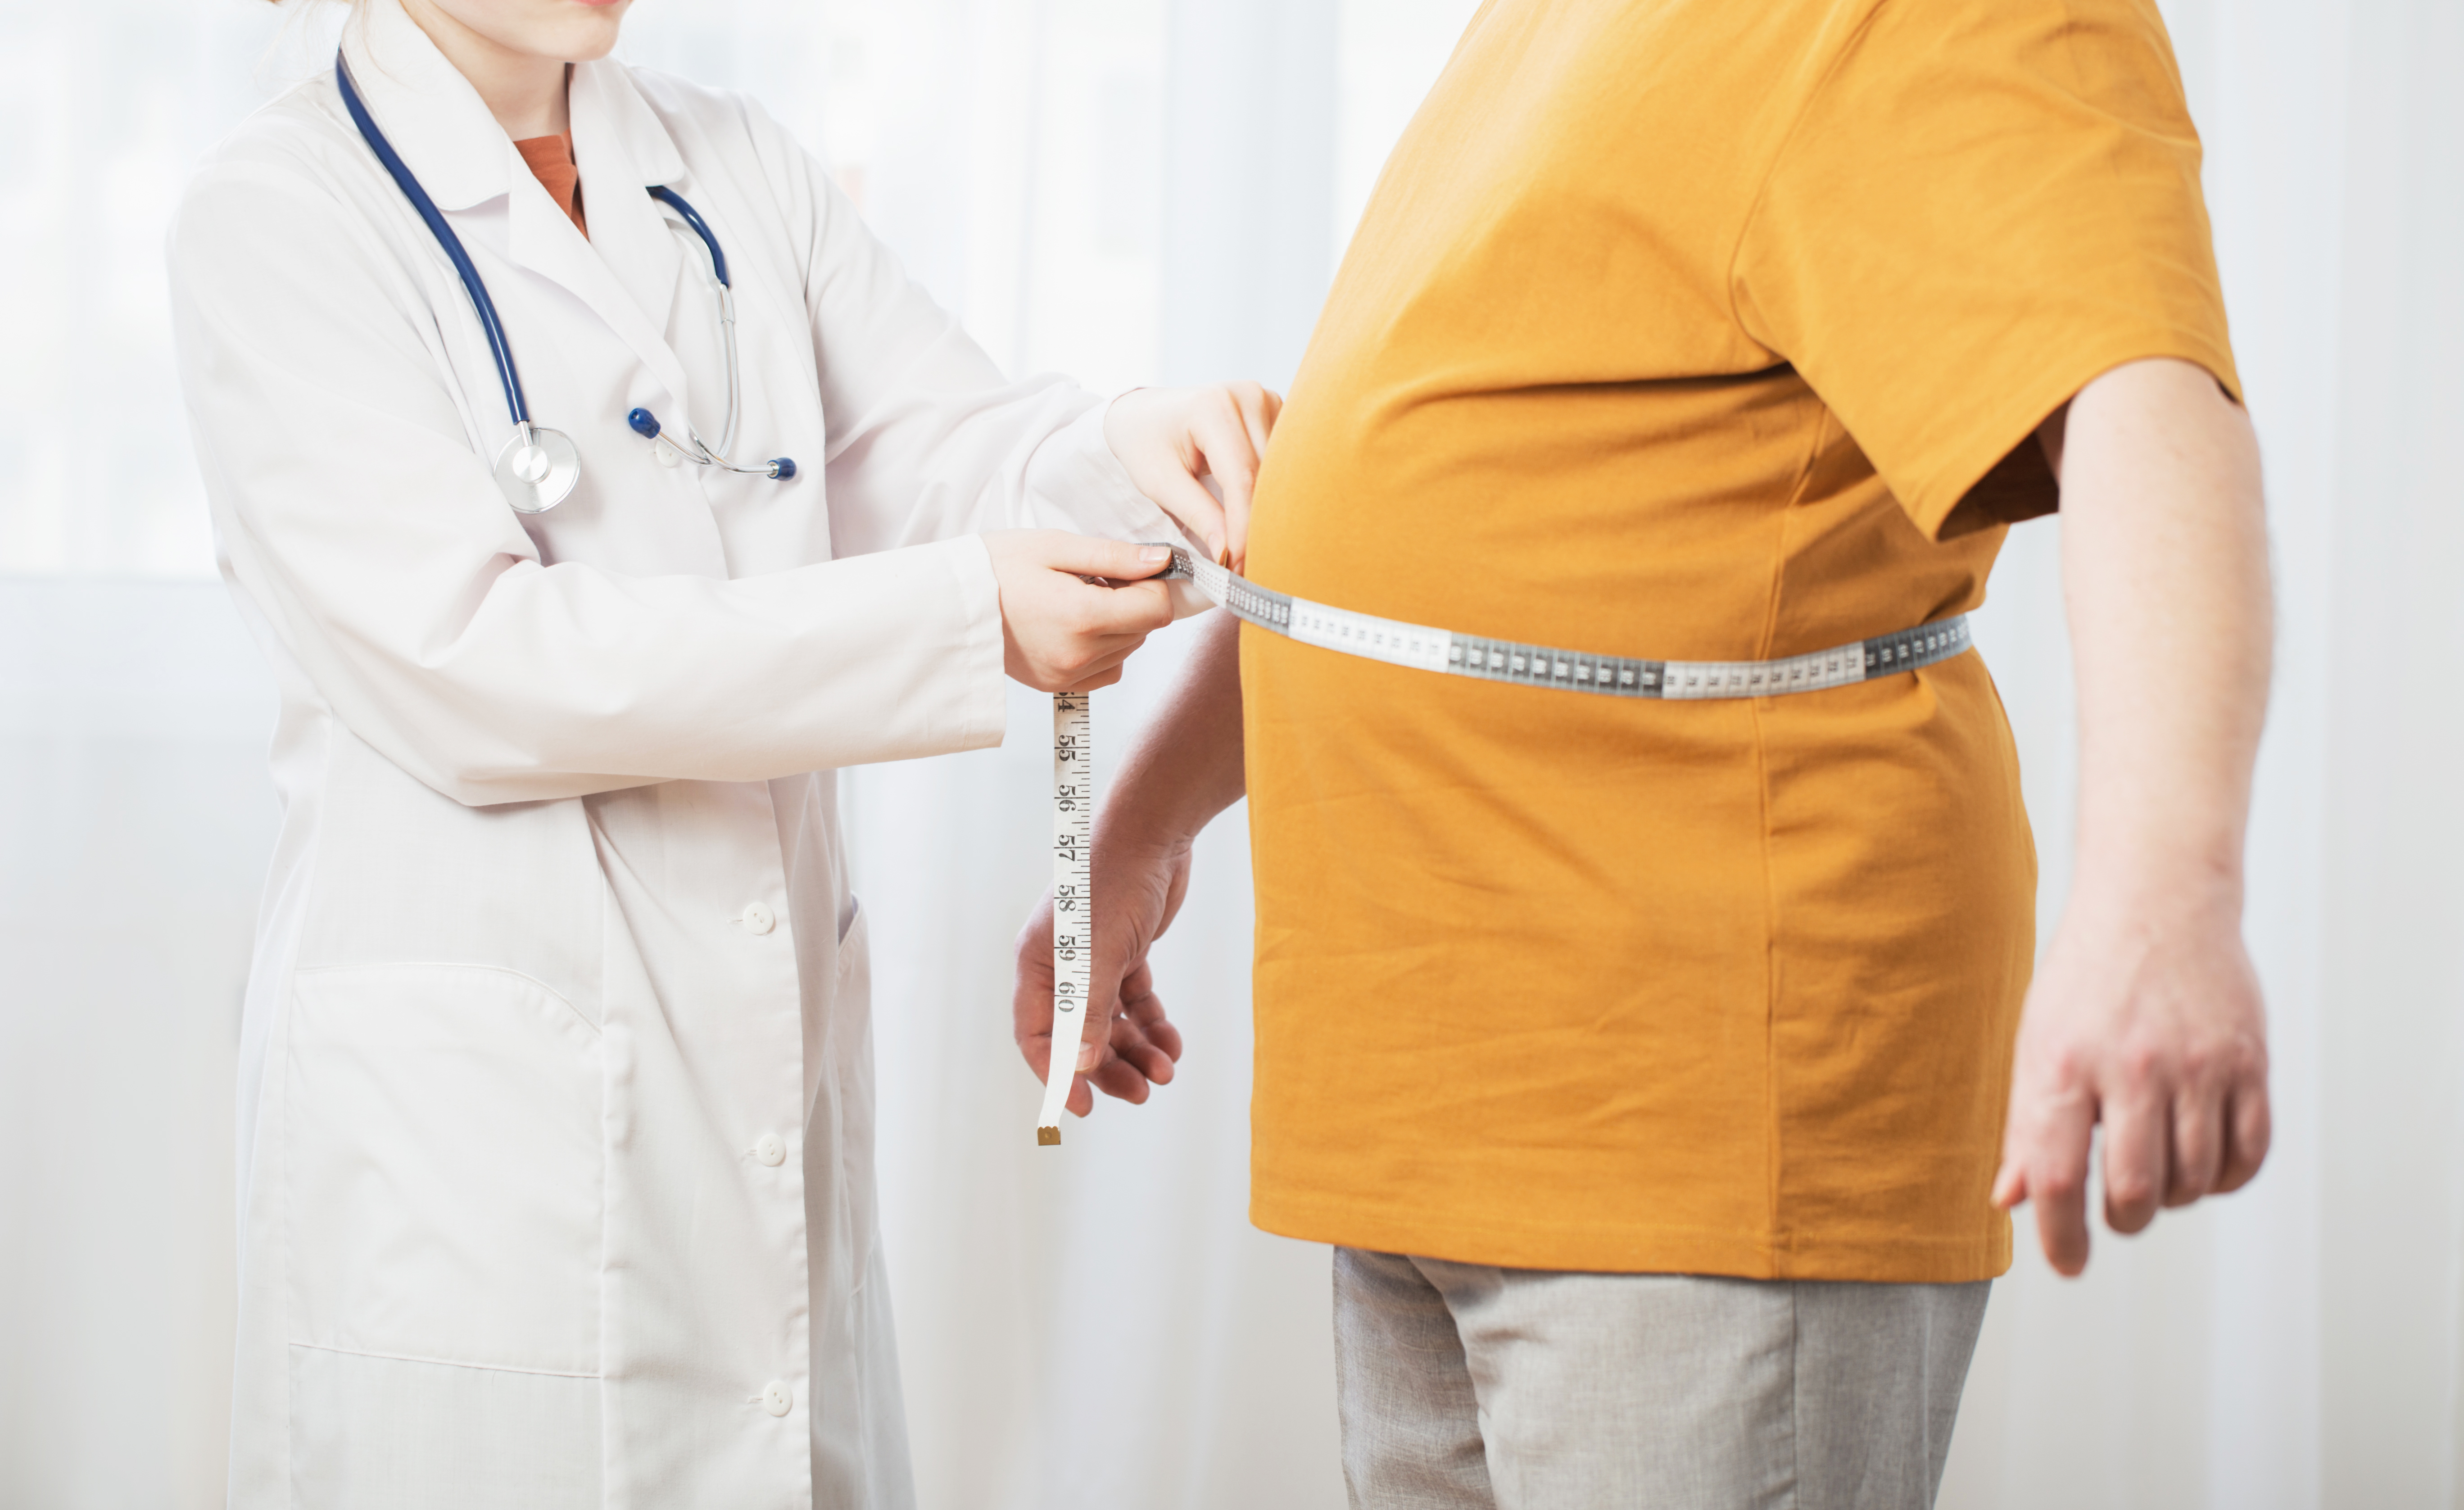 La obesidad es una enfermedad crónica que favorece la aparición de otras enfermedades, como la hipertensión arterial o la diabetes tipo 2 (Shutterstock)